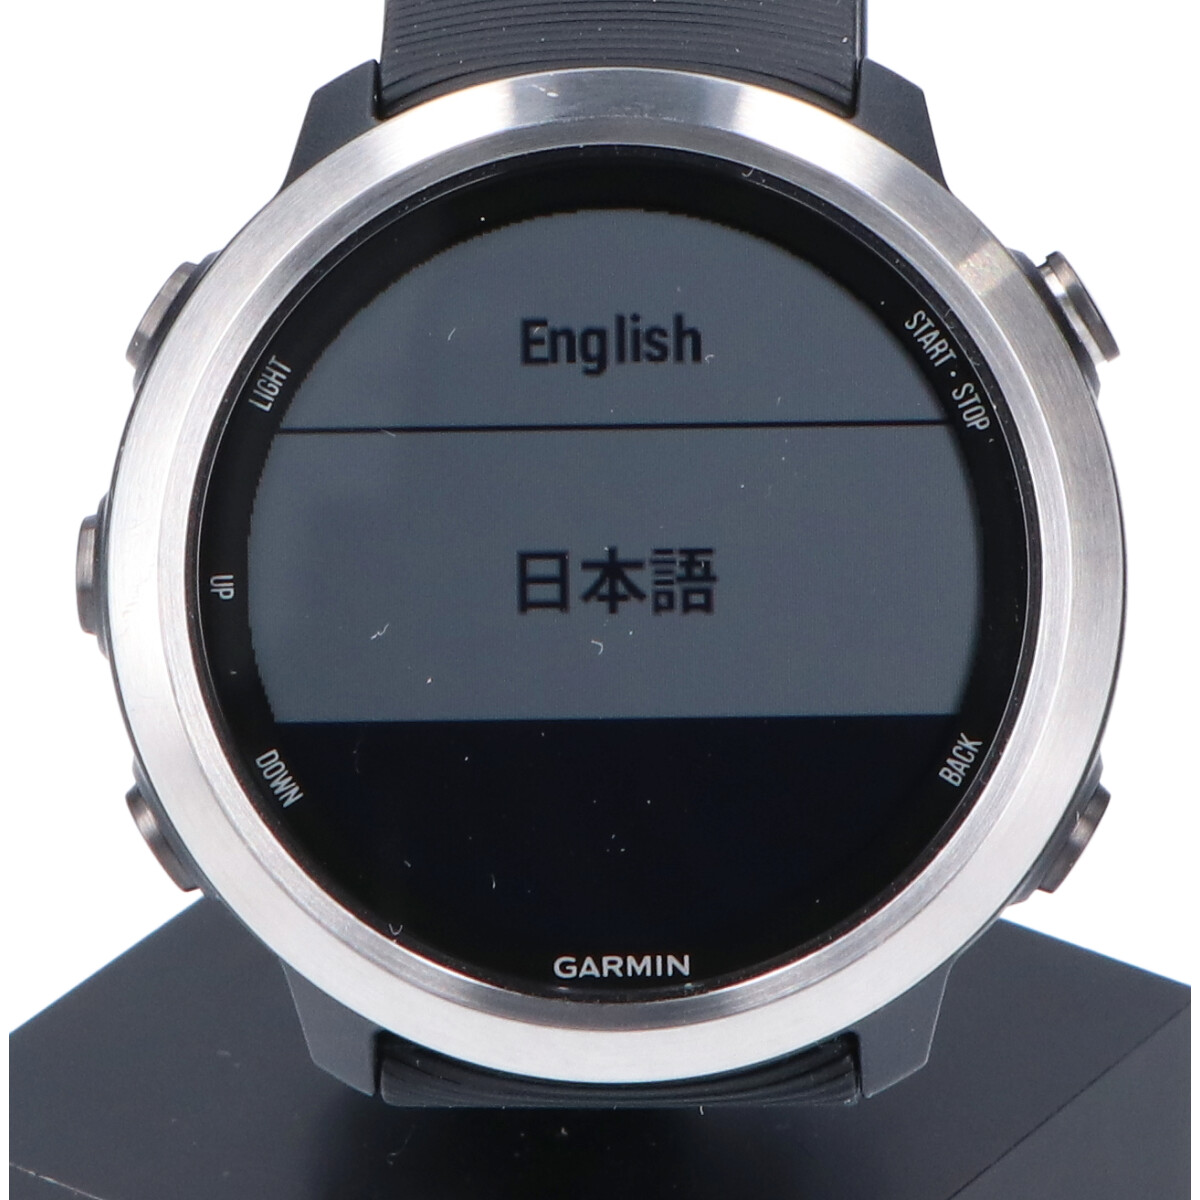 ガーミンの010-01863-D0 ForeAthlete 645 Music GPSランニングウォッチ スマートウォッチの買取実績です。